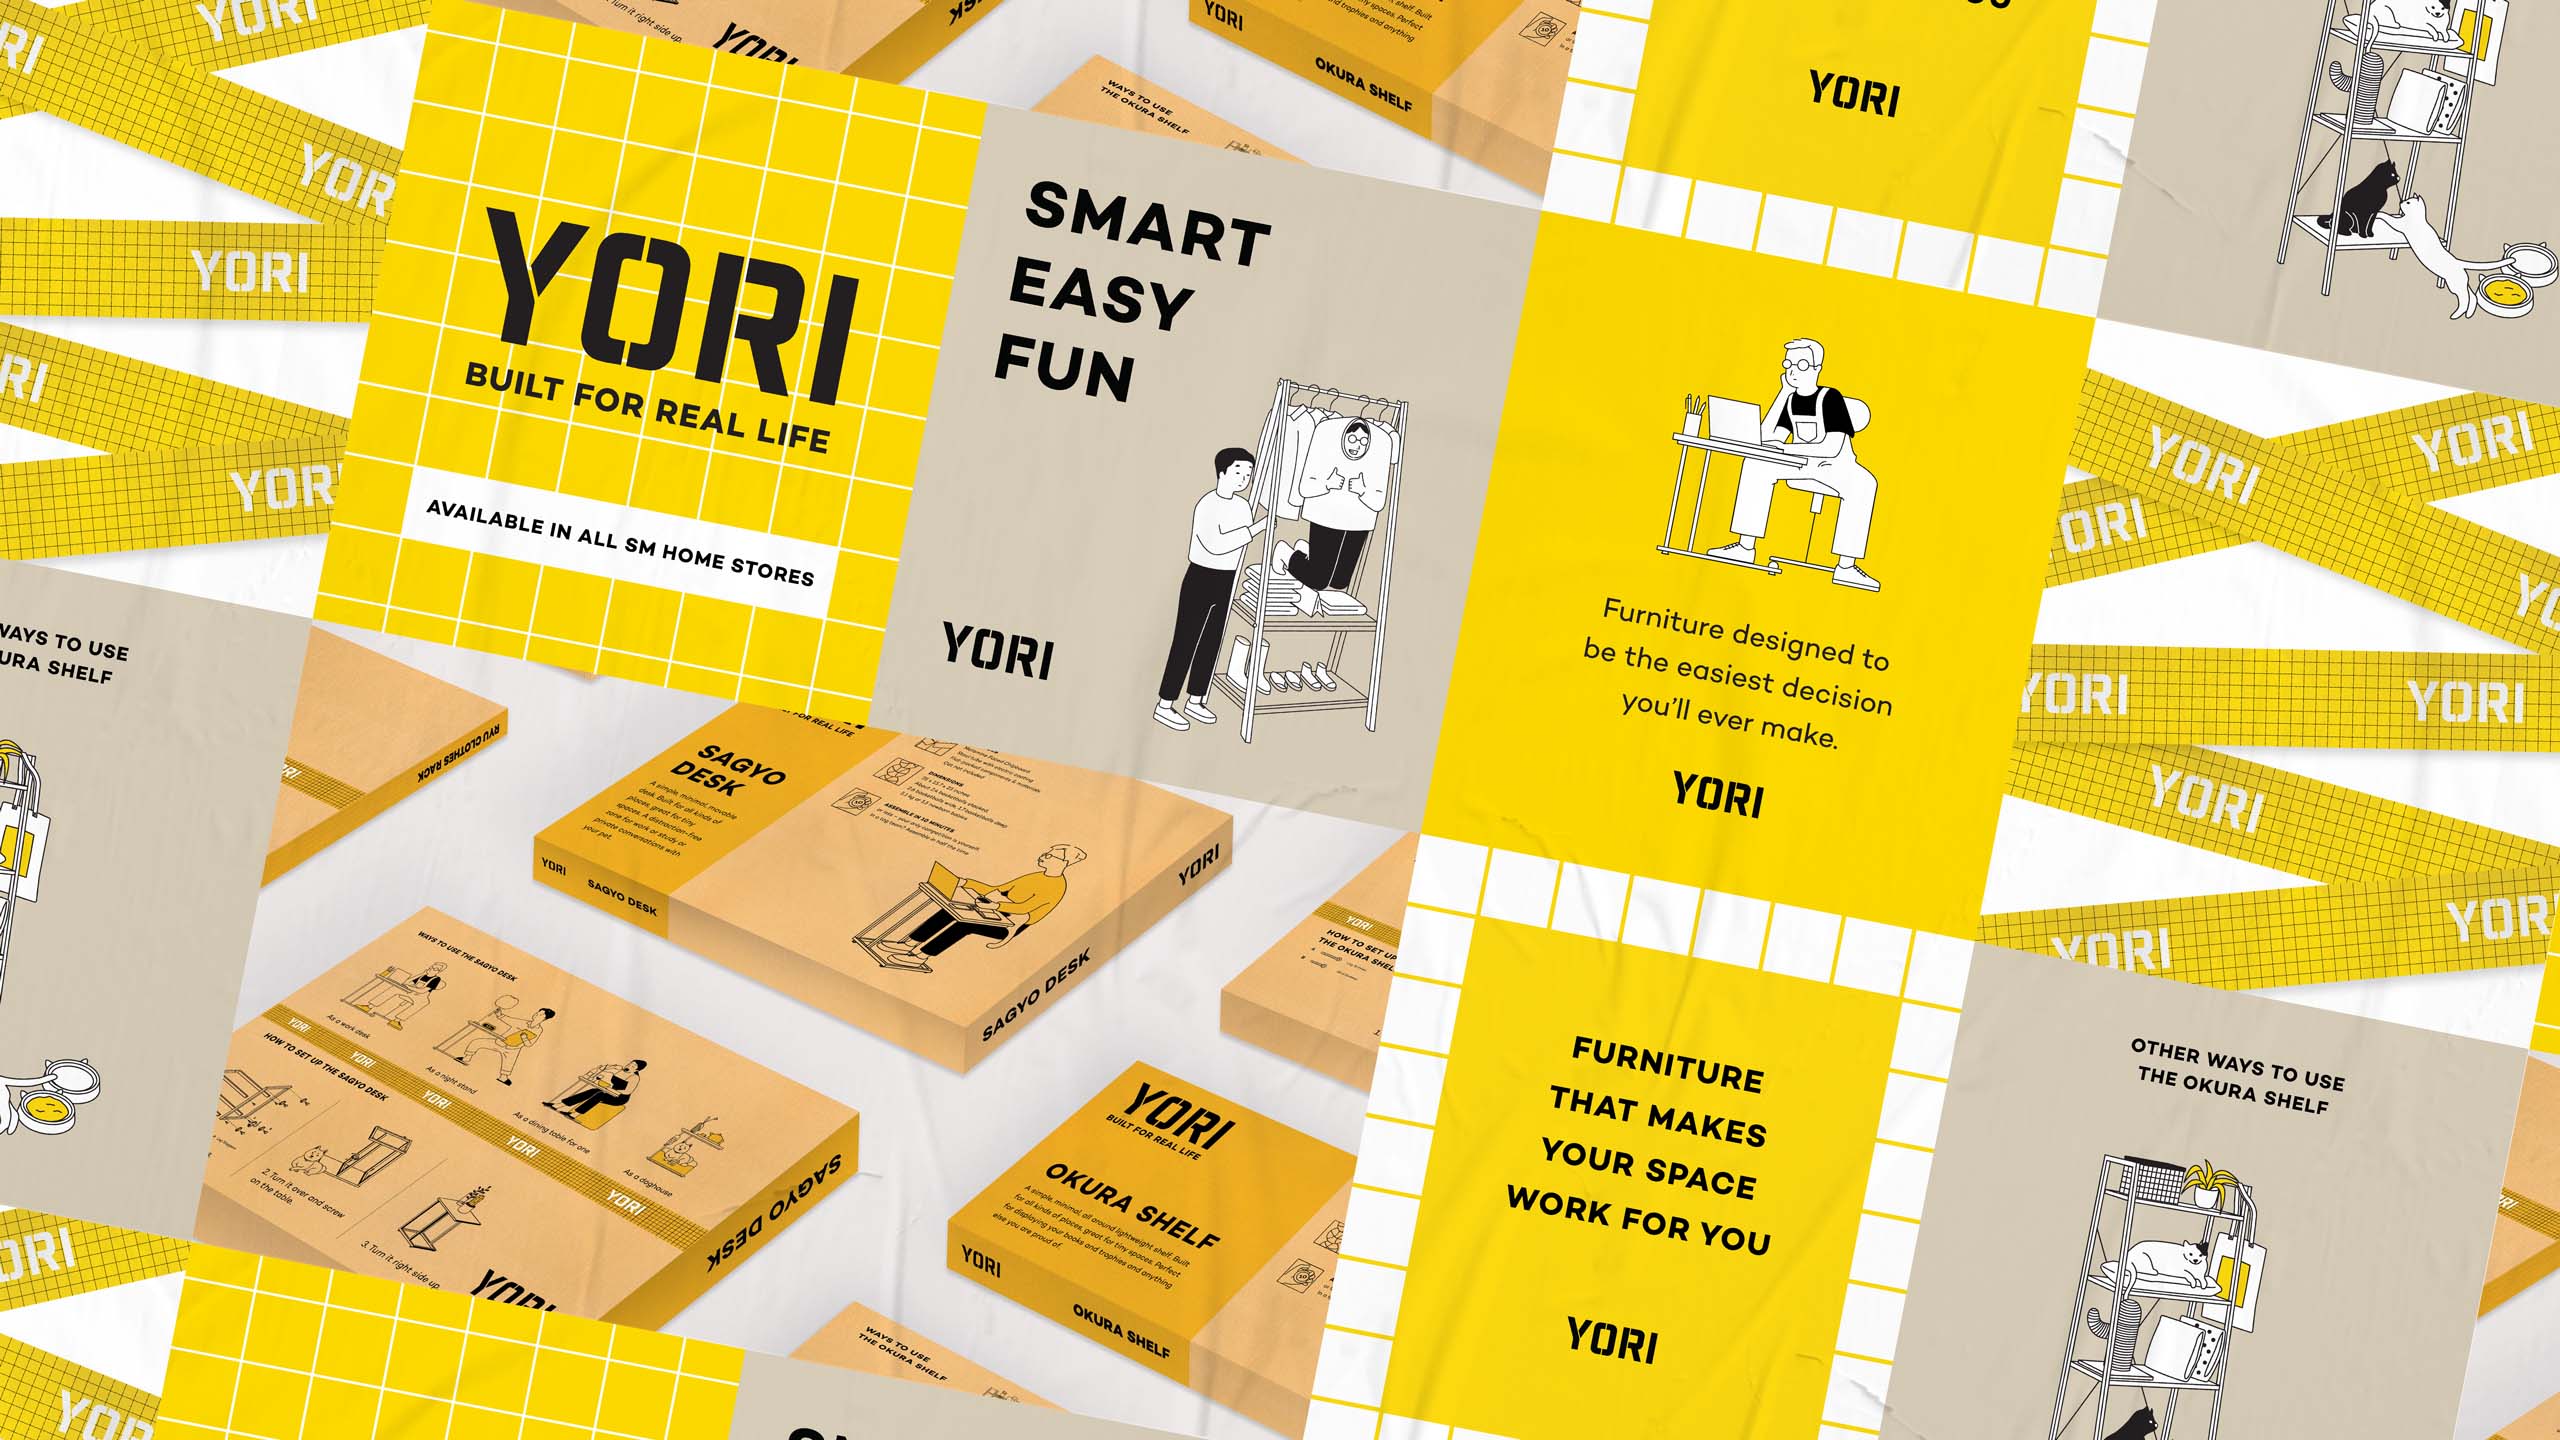 Fun and witty Japanese-inspired minimalist branding for flatpack furniture brand Yori